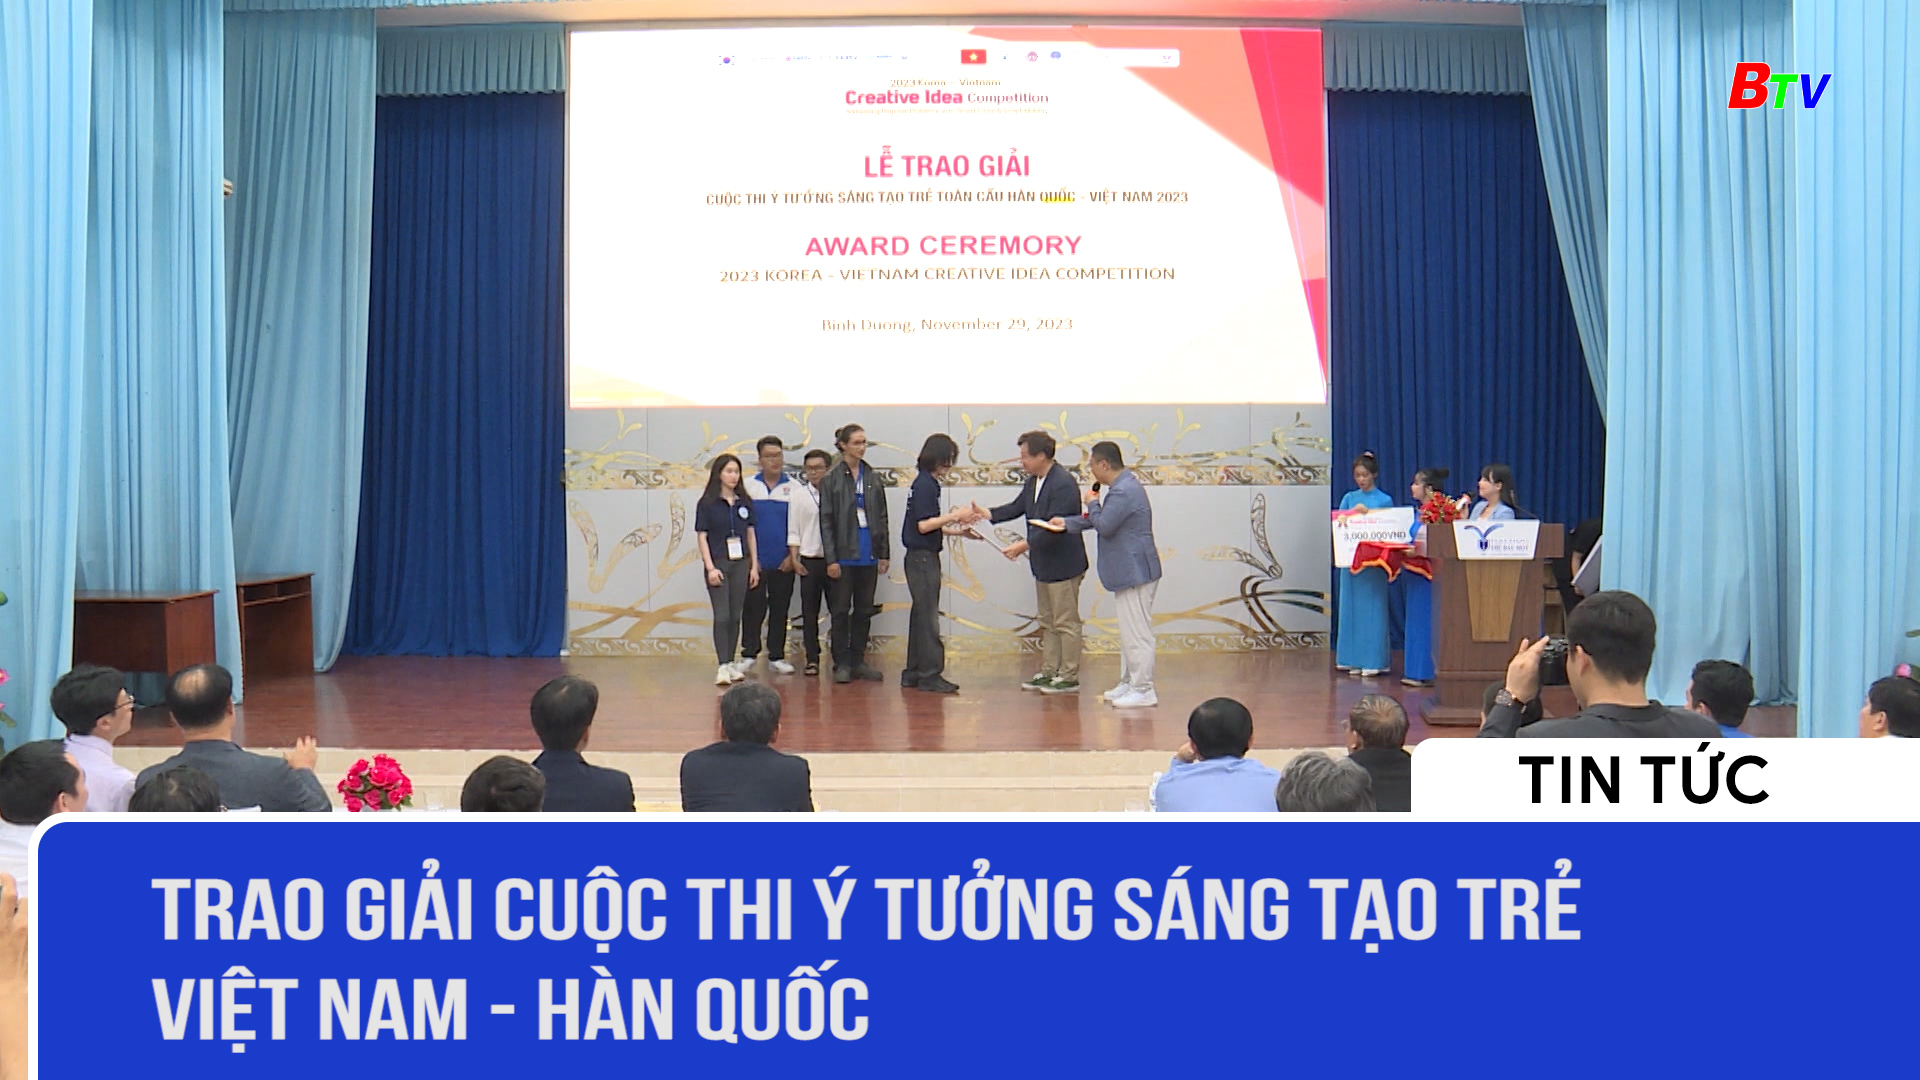 Trao giải Cuộc thi ý tưởng sáng tạo trẻ Việt Nam-Hàn Quốc